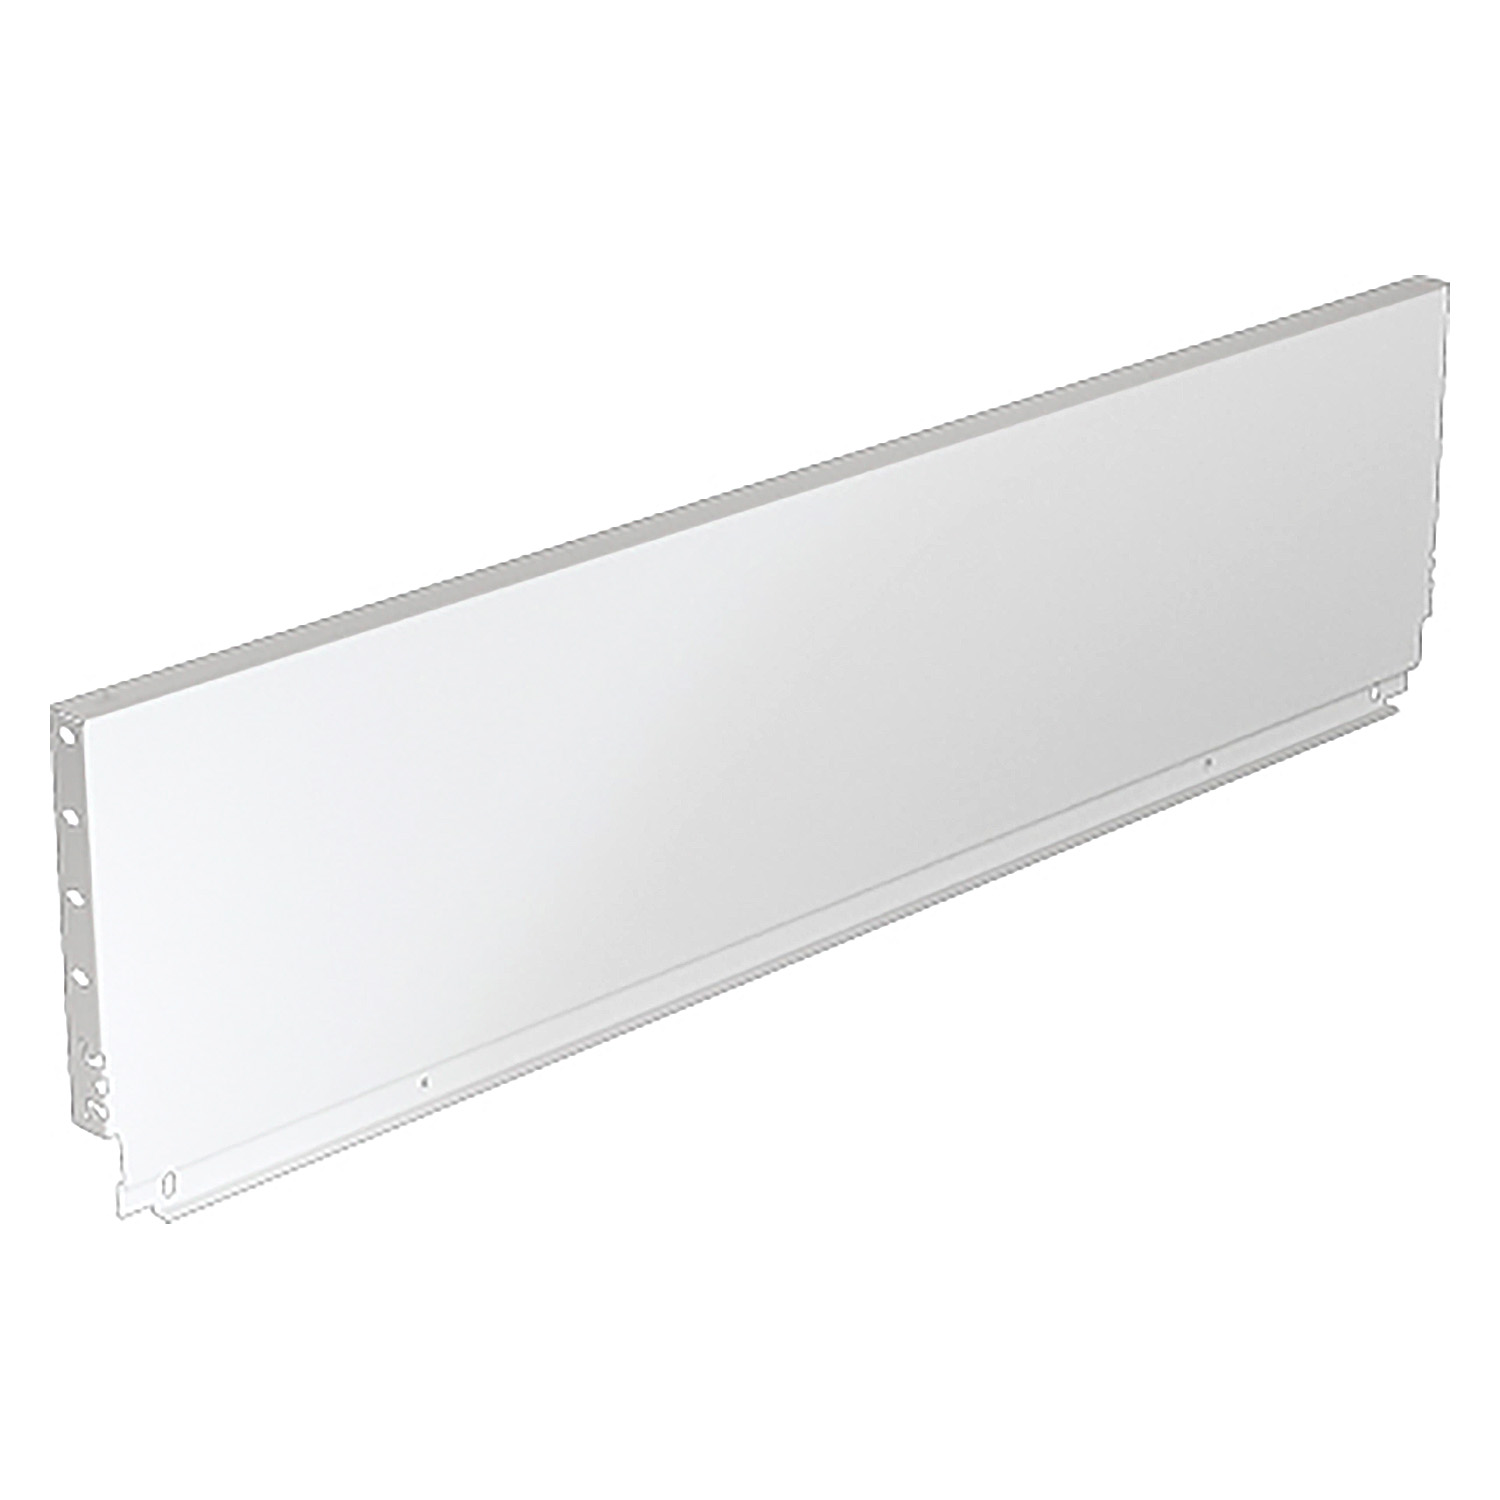 HETTICH Stahlrückwand ArciTech, 218 x 400 mm, weiß, 9121614